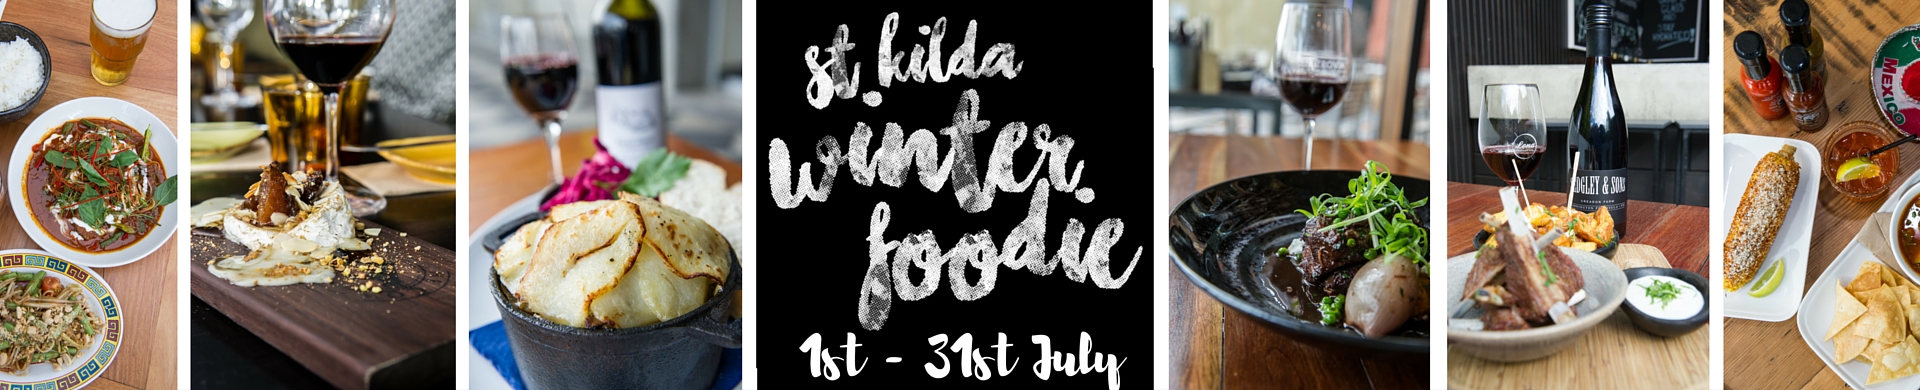 St Kilda Foodie Web Banner